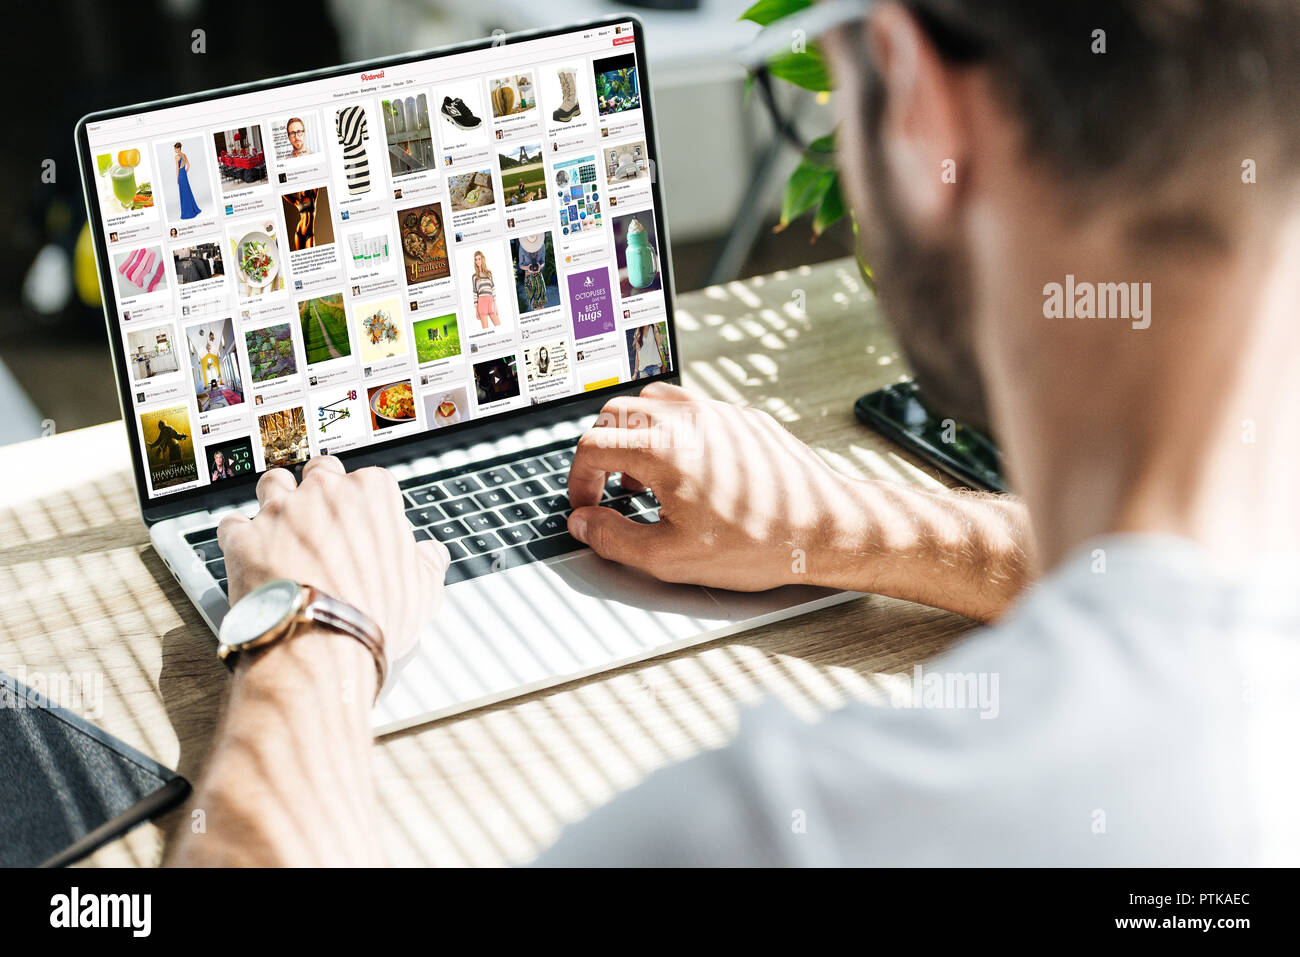 Vue partielle de l'homme à l'aide d'un ordinateur portable avec écran site sur pinterest Banque D'Images